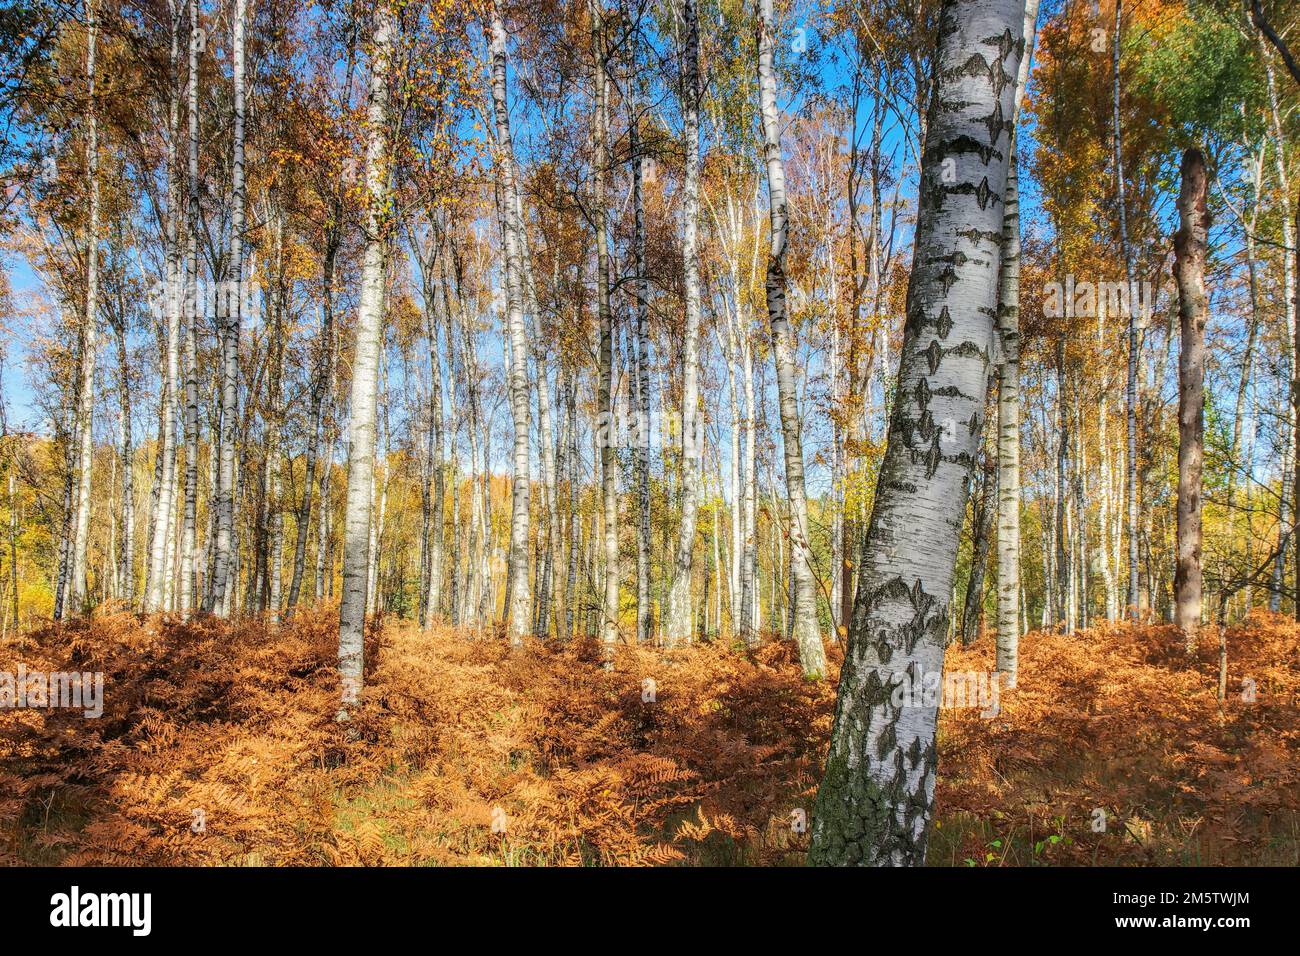 Forêt de bouleau avec fougères en automne, jour ensoleillé Banque D'Images